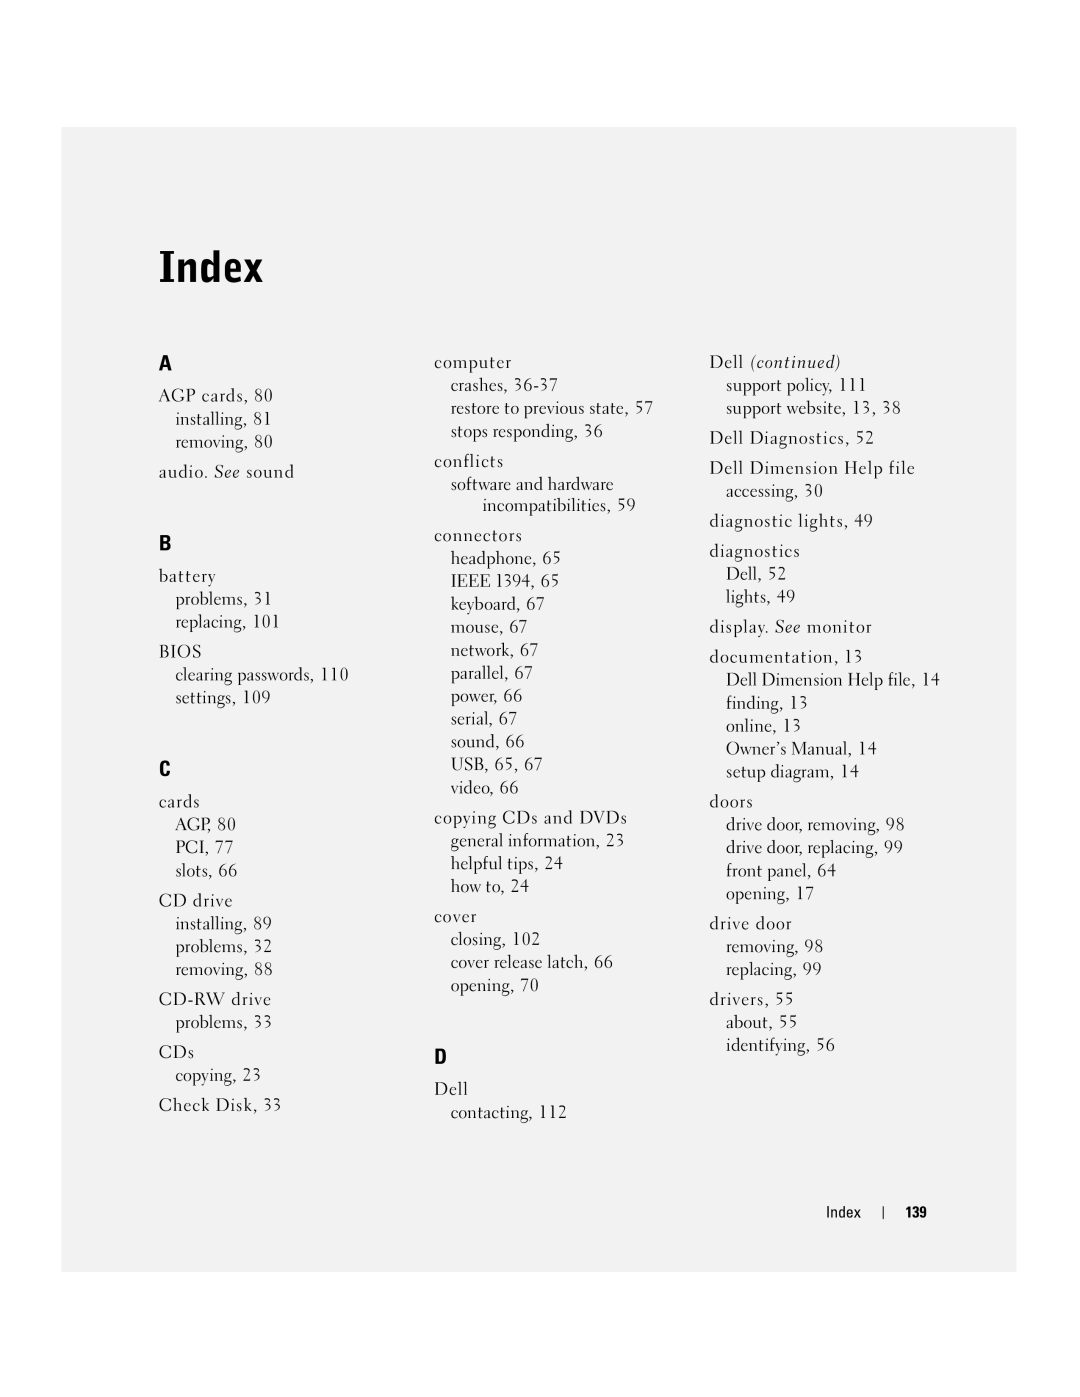 Dell XPS manual Index 